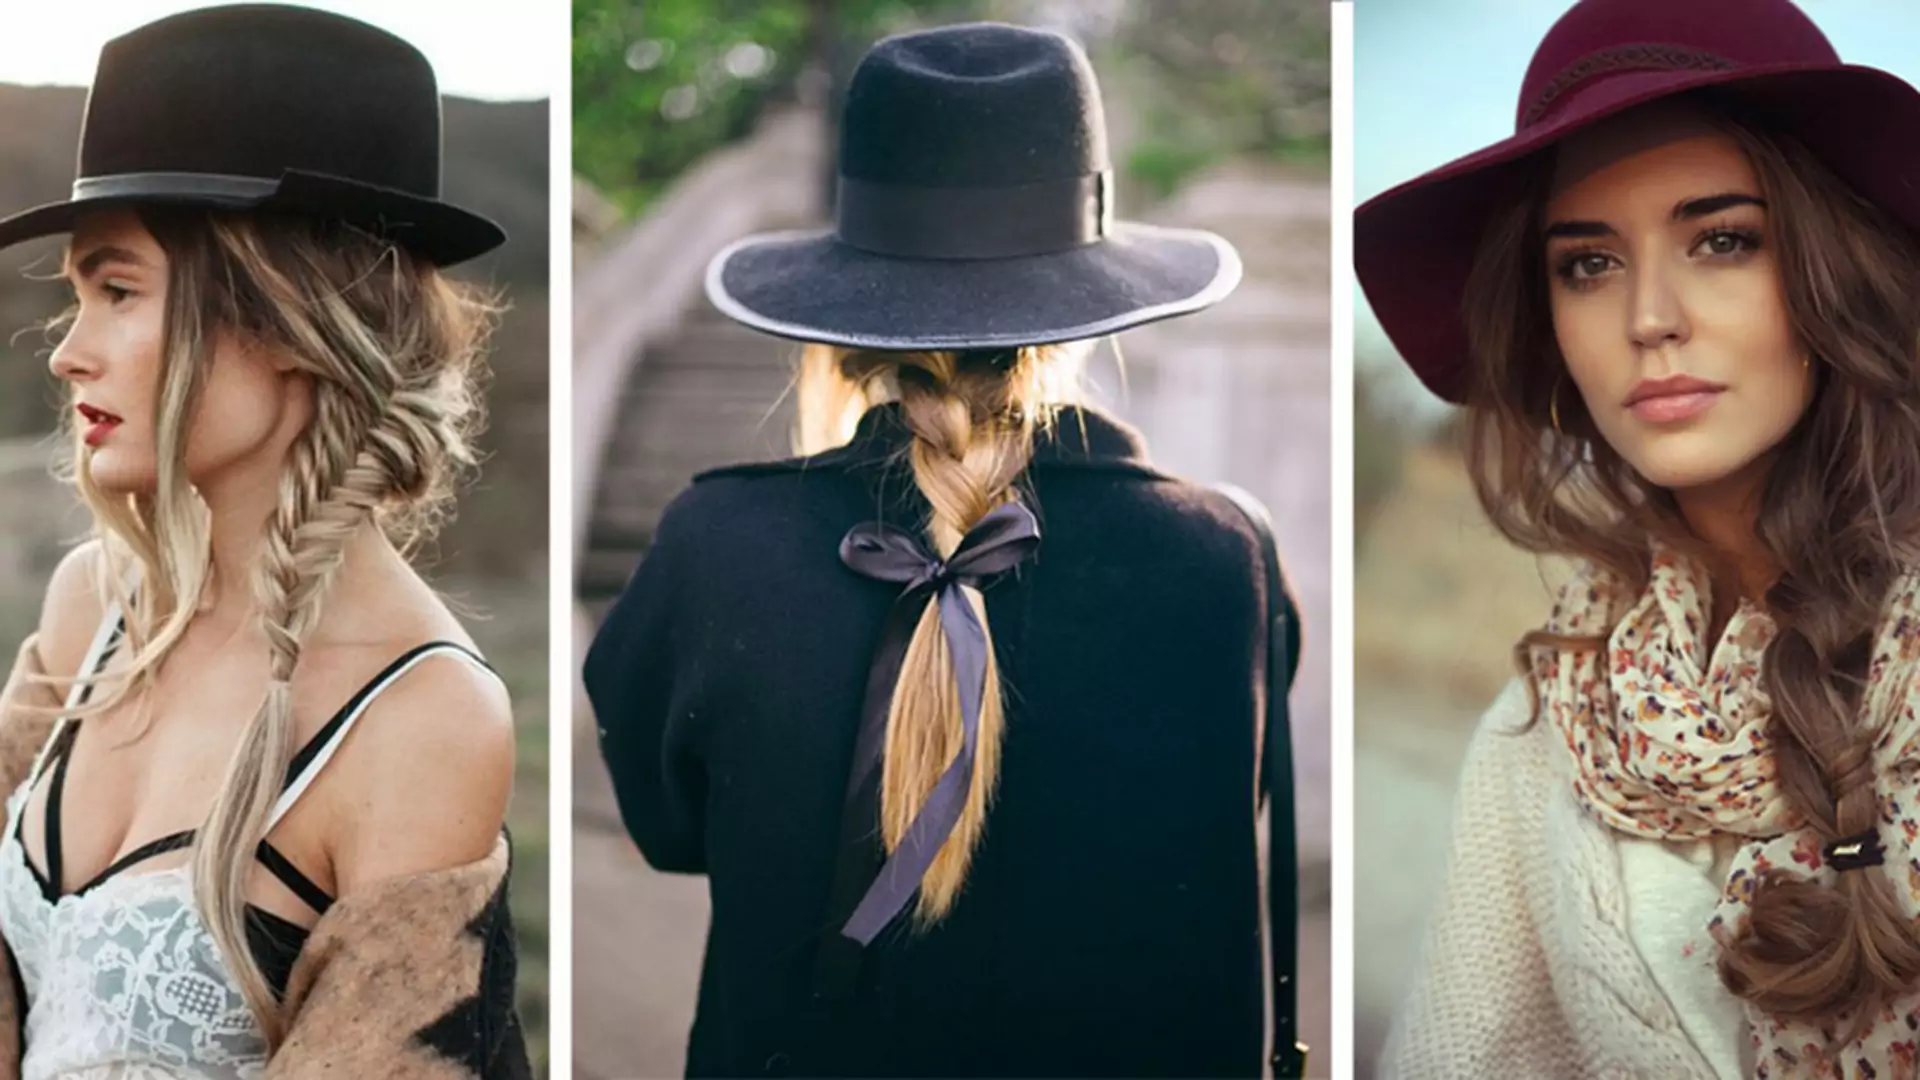 Fryzury idealne pod czapki i kapelusze: warkocze, fale, upięcia